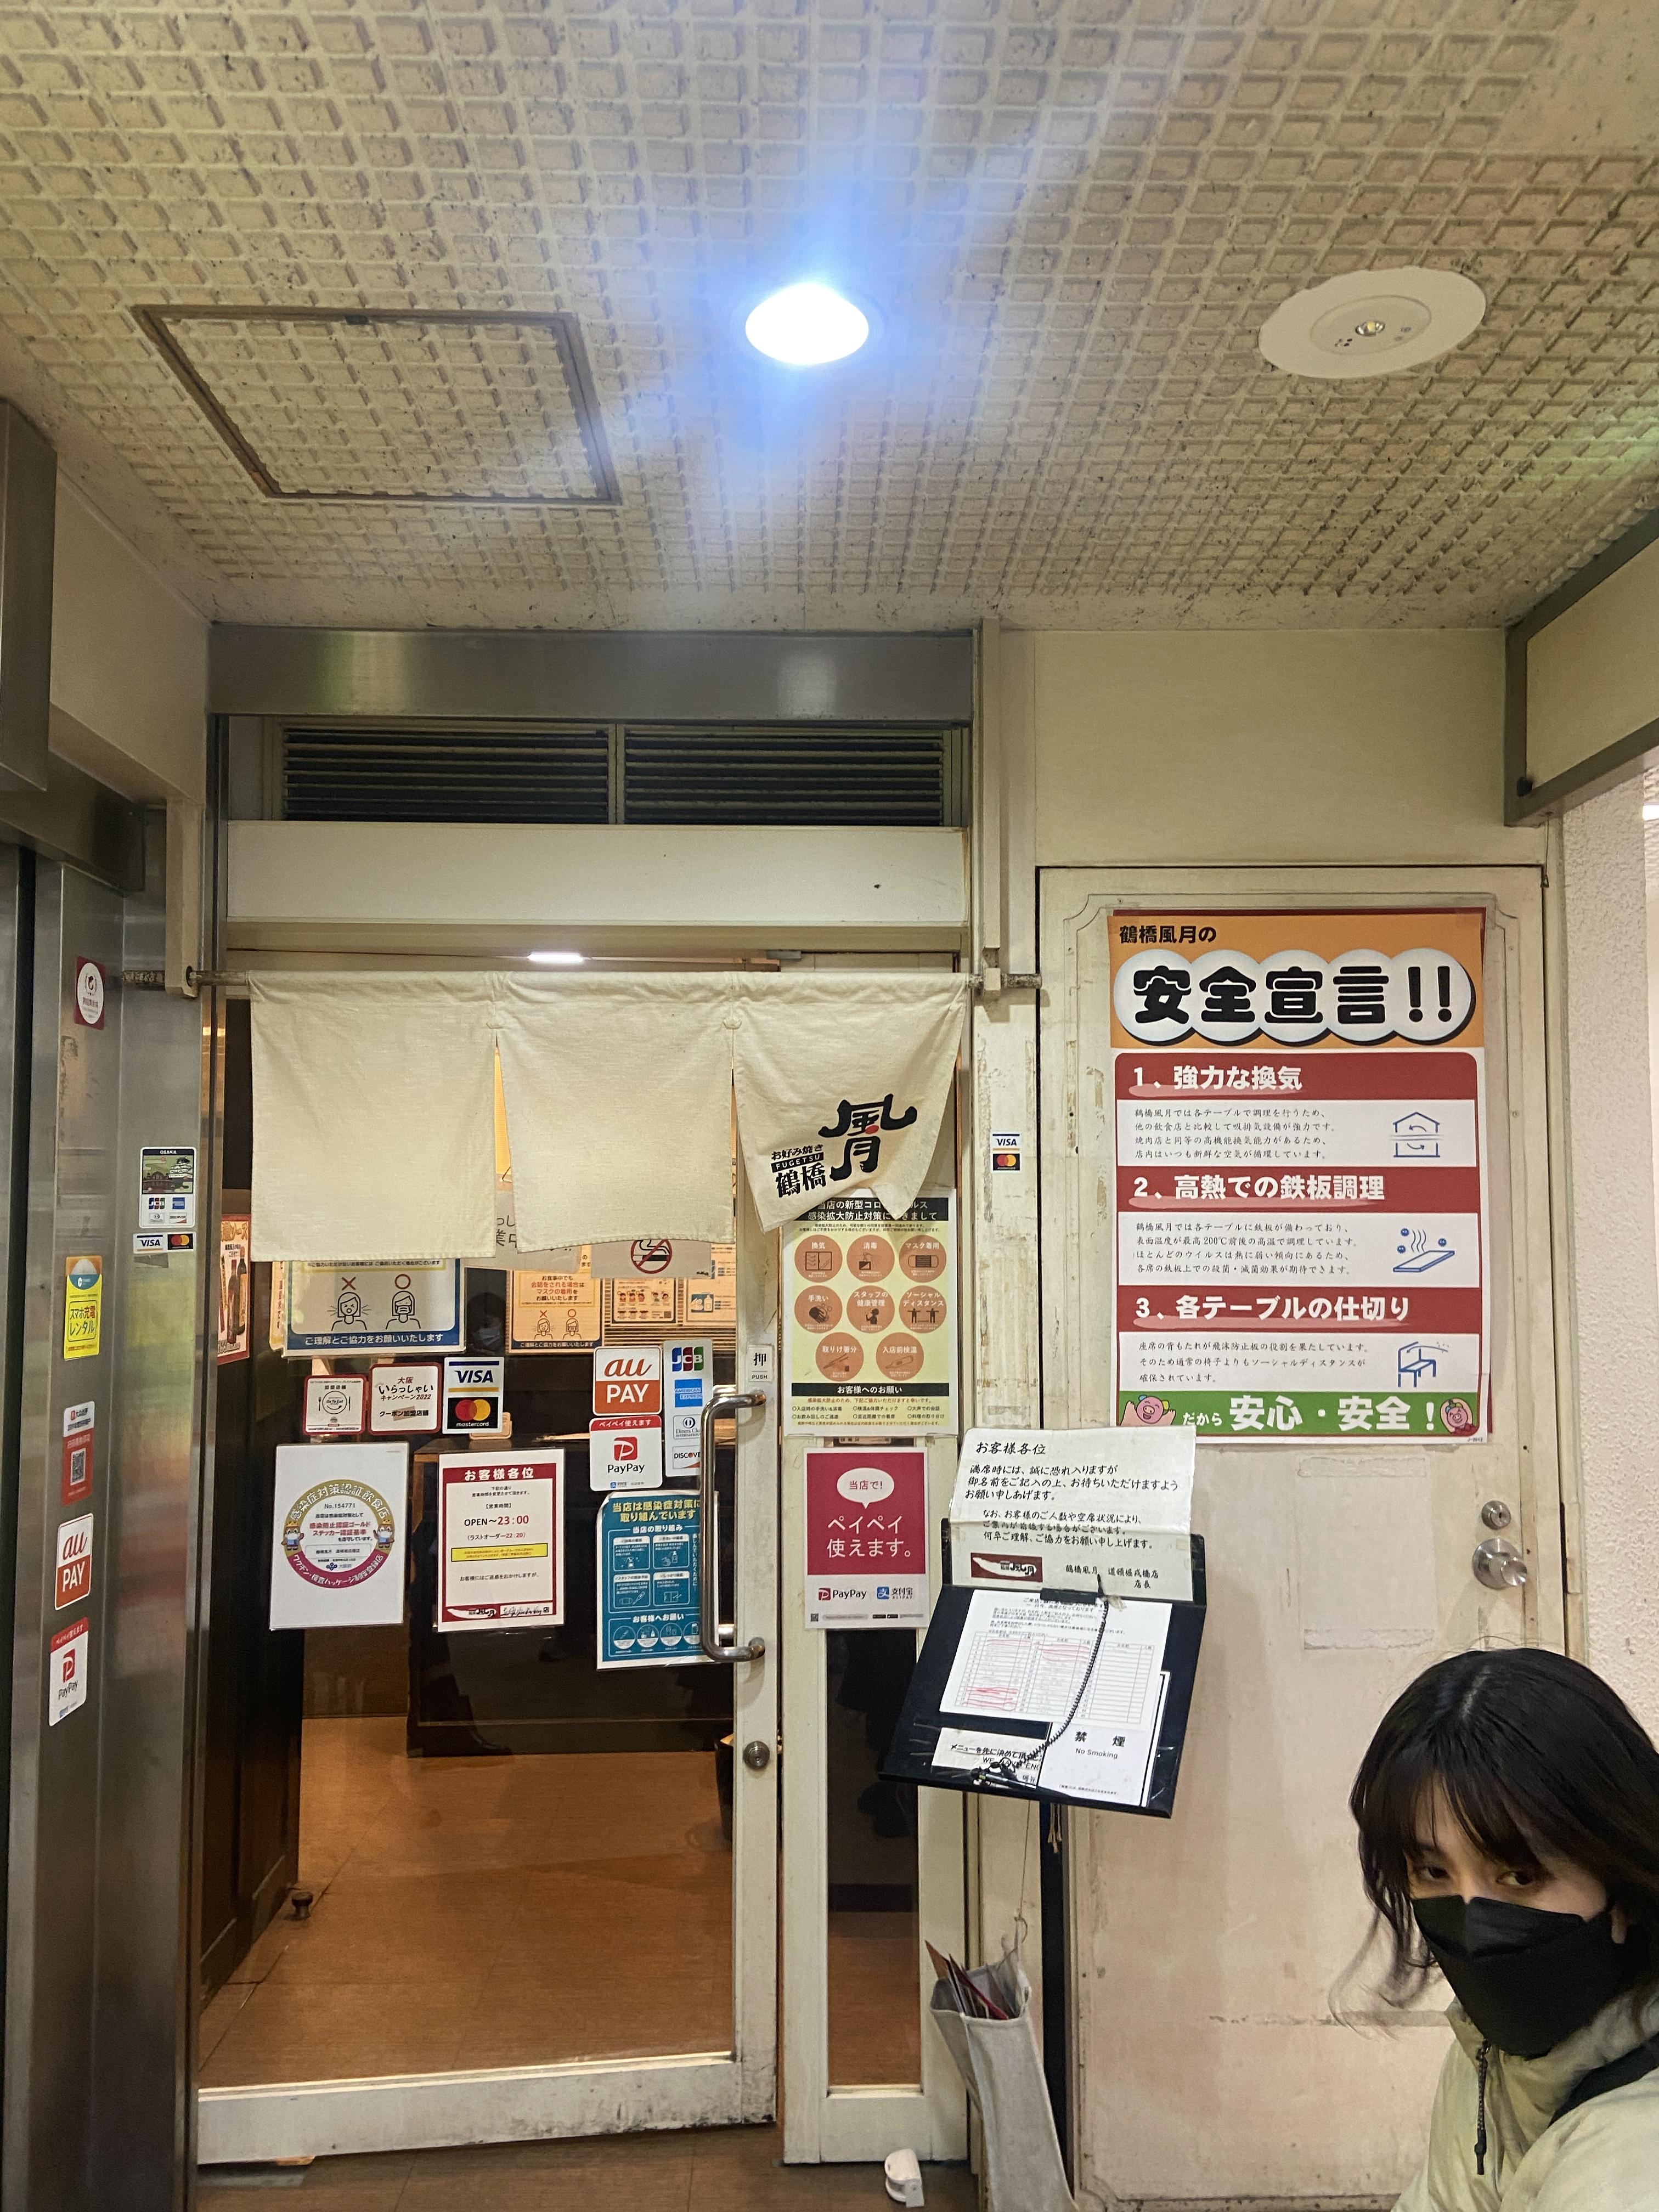 유니버셜 스튜디오 오사카